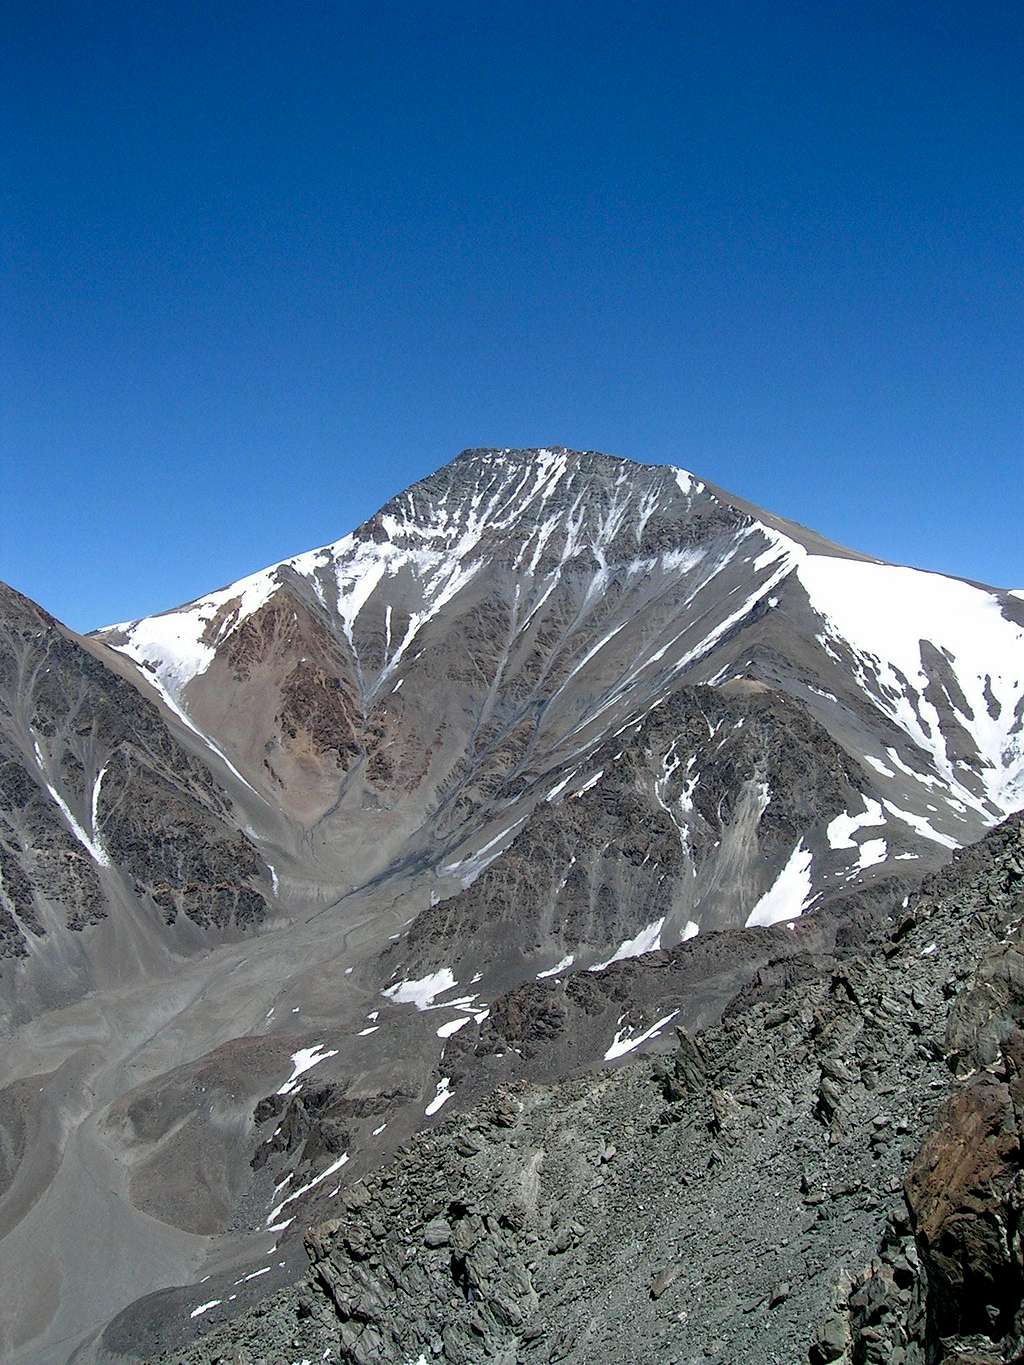 South Face of Cerro Plata